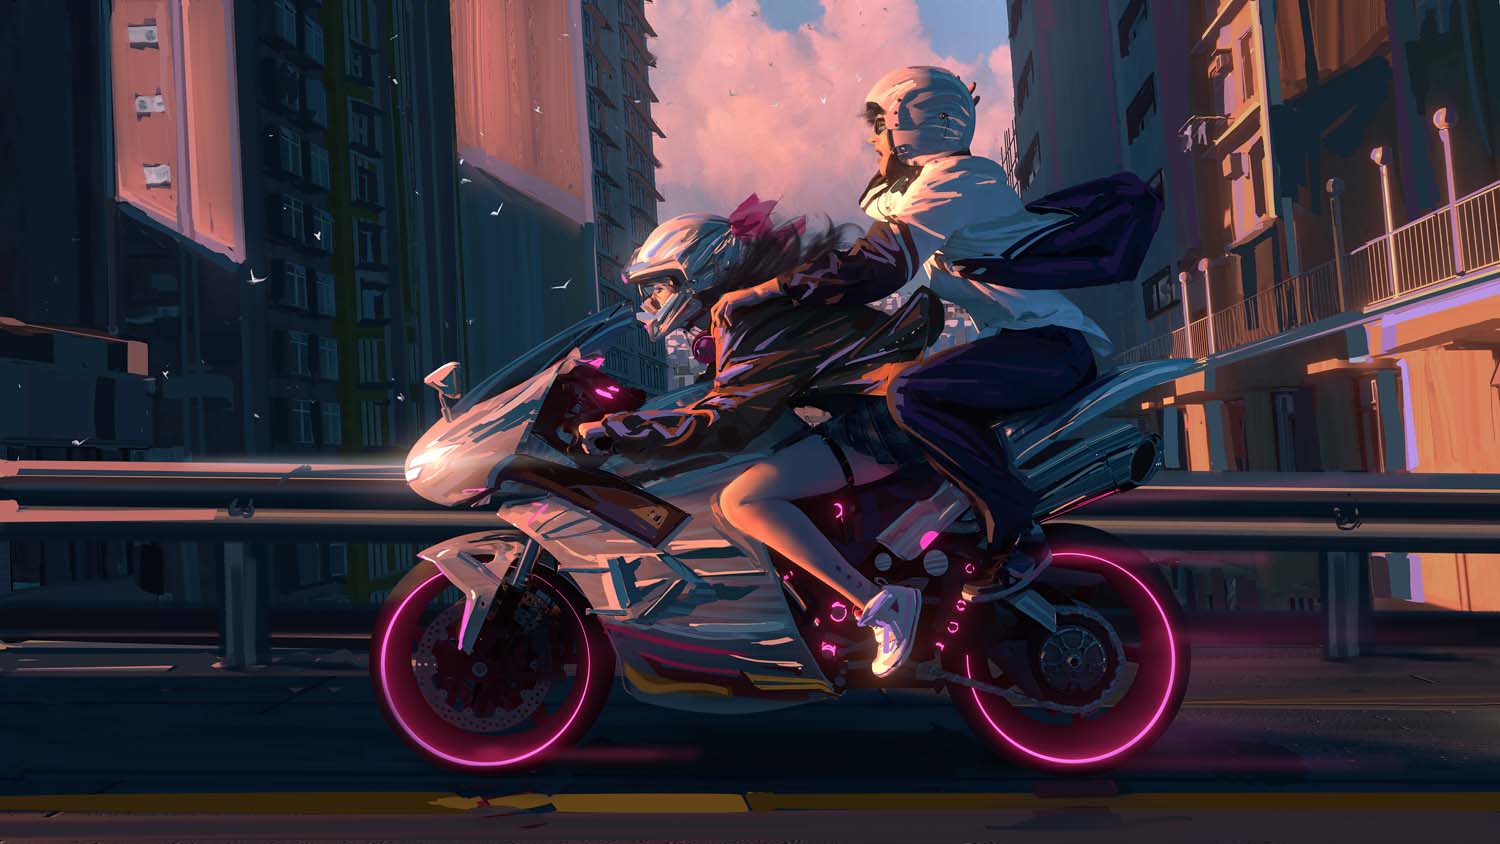 WLOP digital artartwork illustration street road city urban birds glowing sneaker scar model motorcycle Tekken